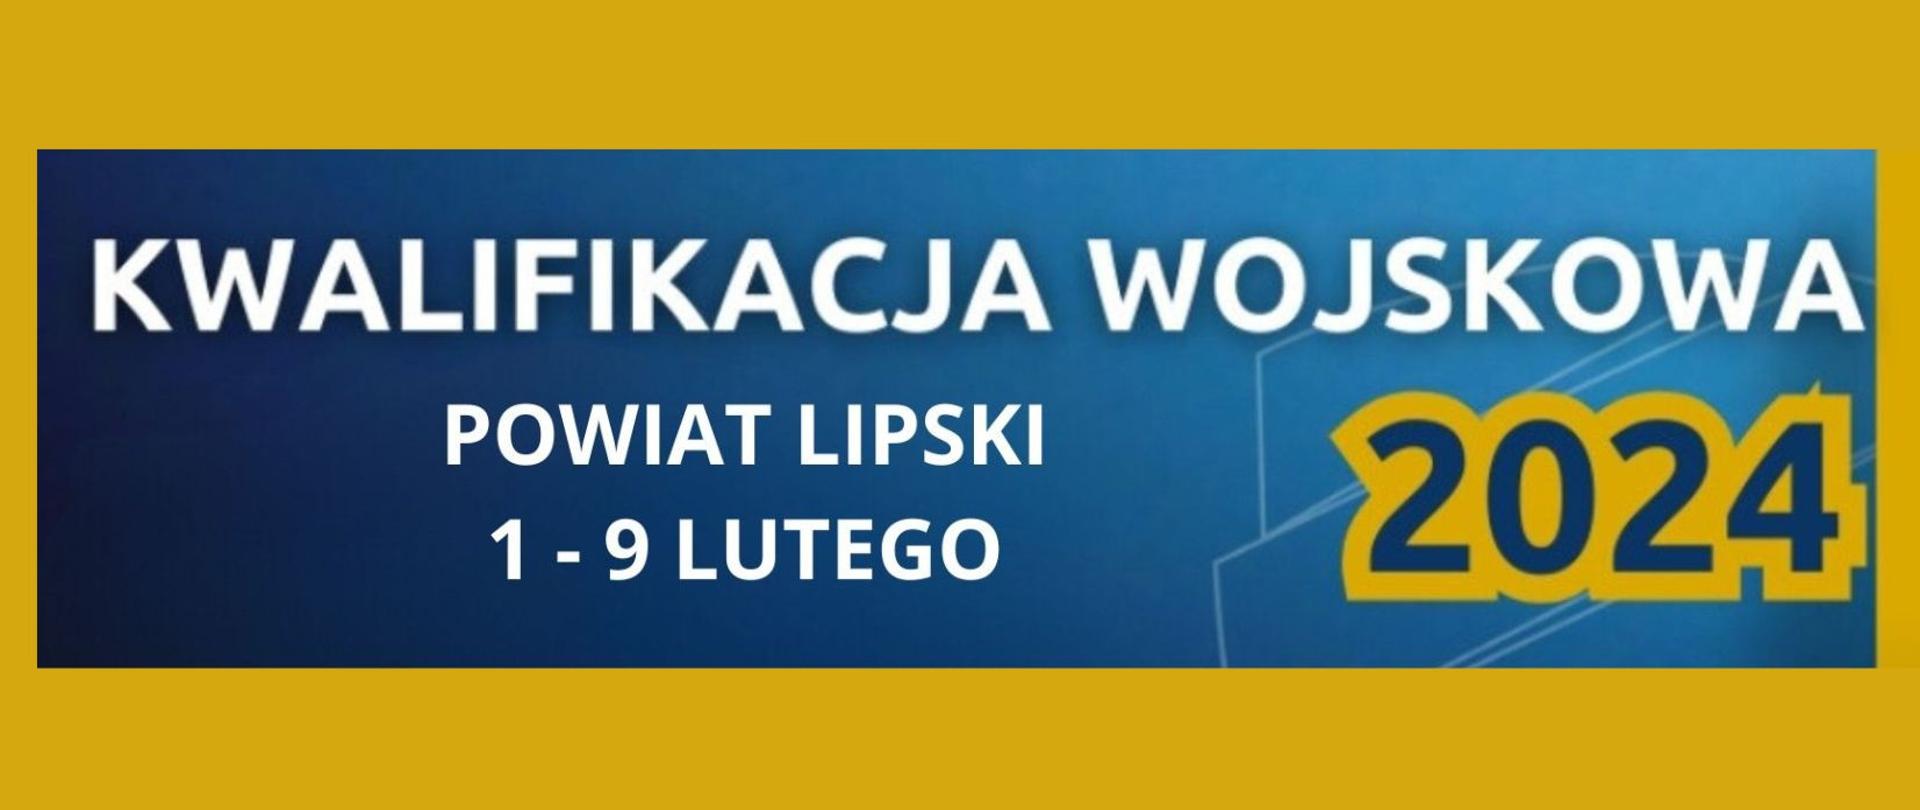 Napis "kwalifikacja wojskowa - Powiat Lipski 1 - 9 lutego 2024" na granatowo pomarańczowym tle.